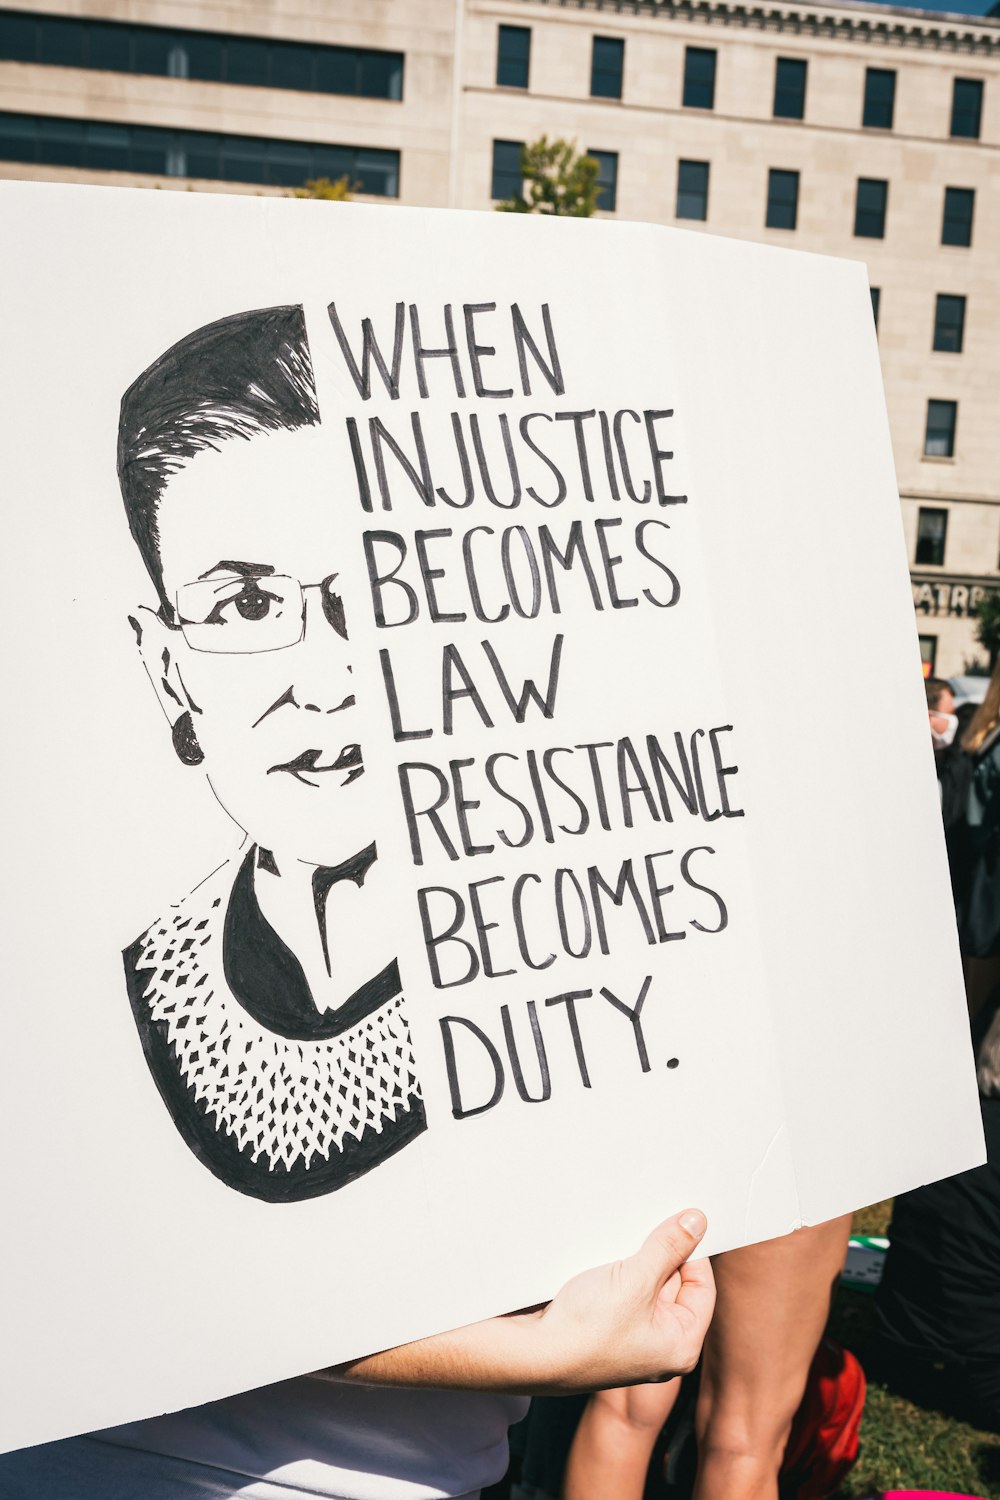 正義が法律になると、抵抗が義務になるという看板を持っている人